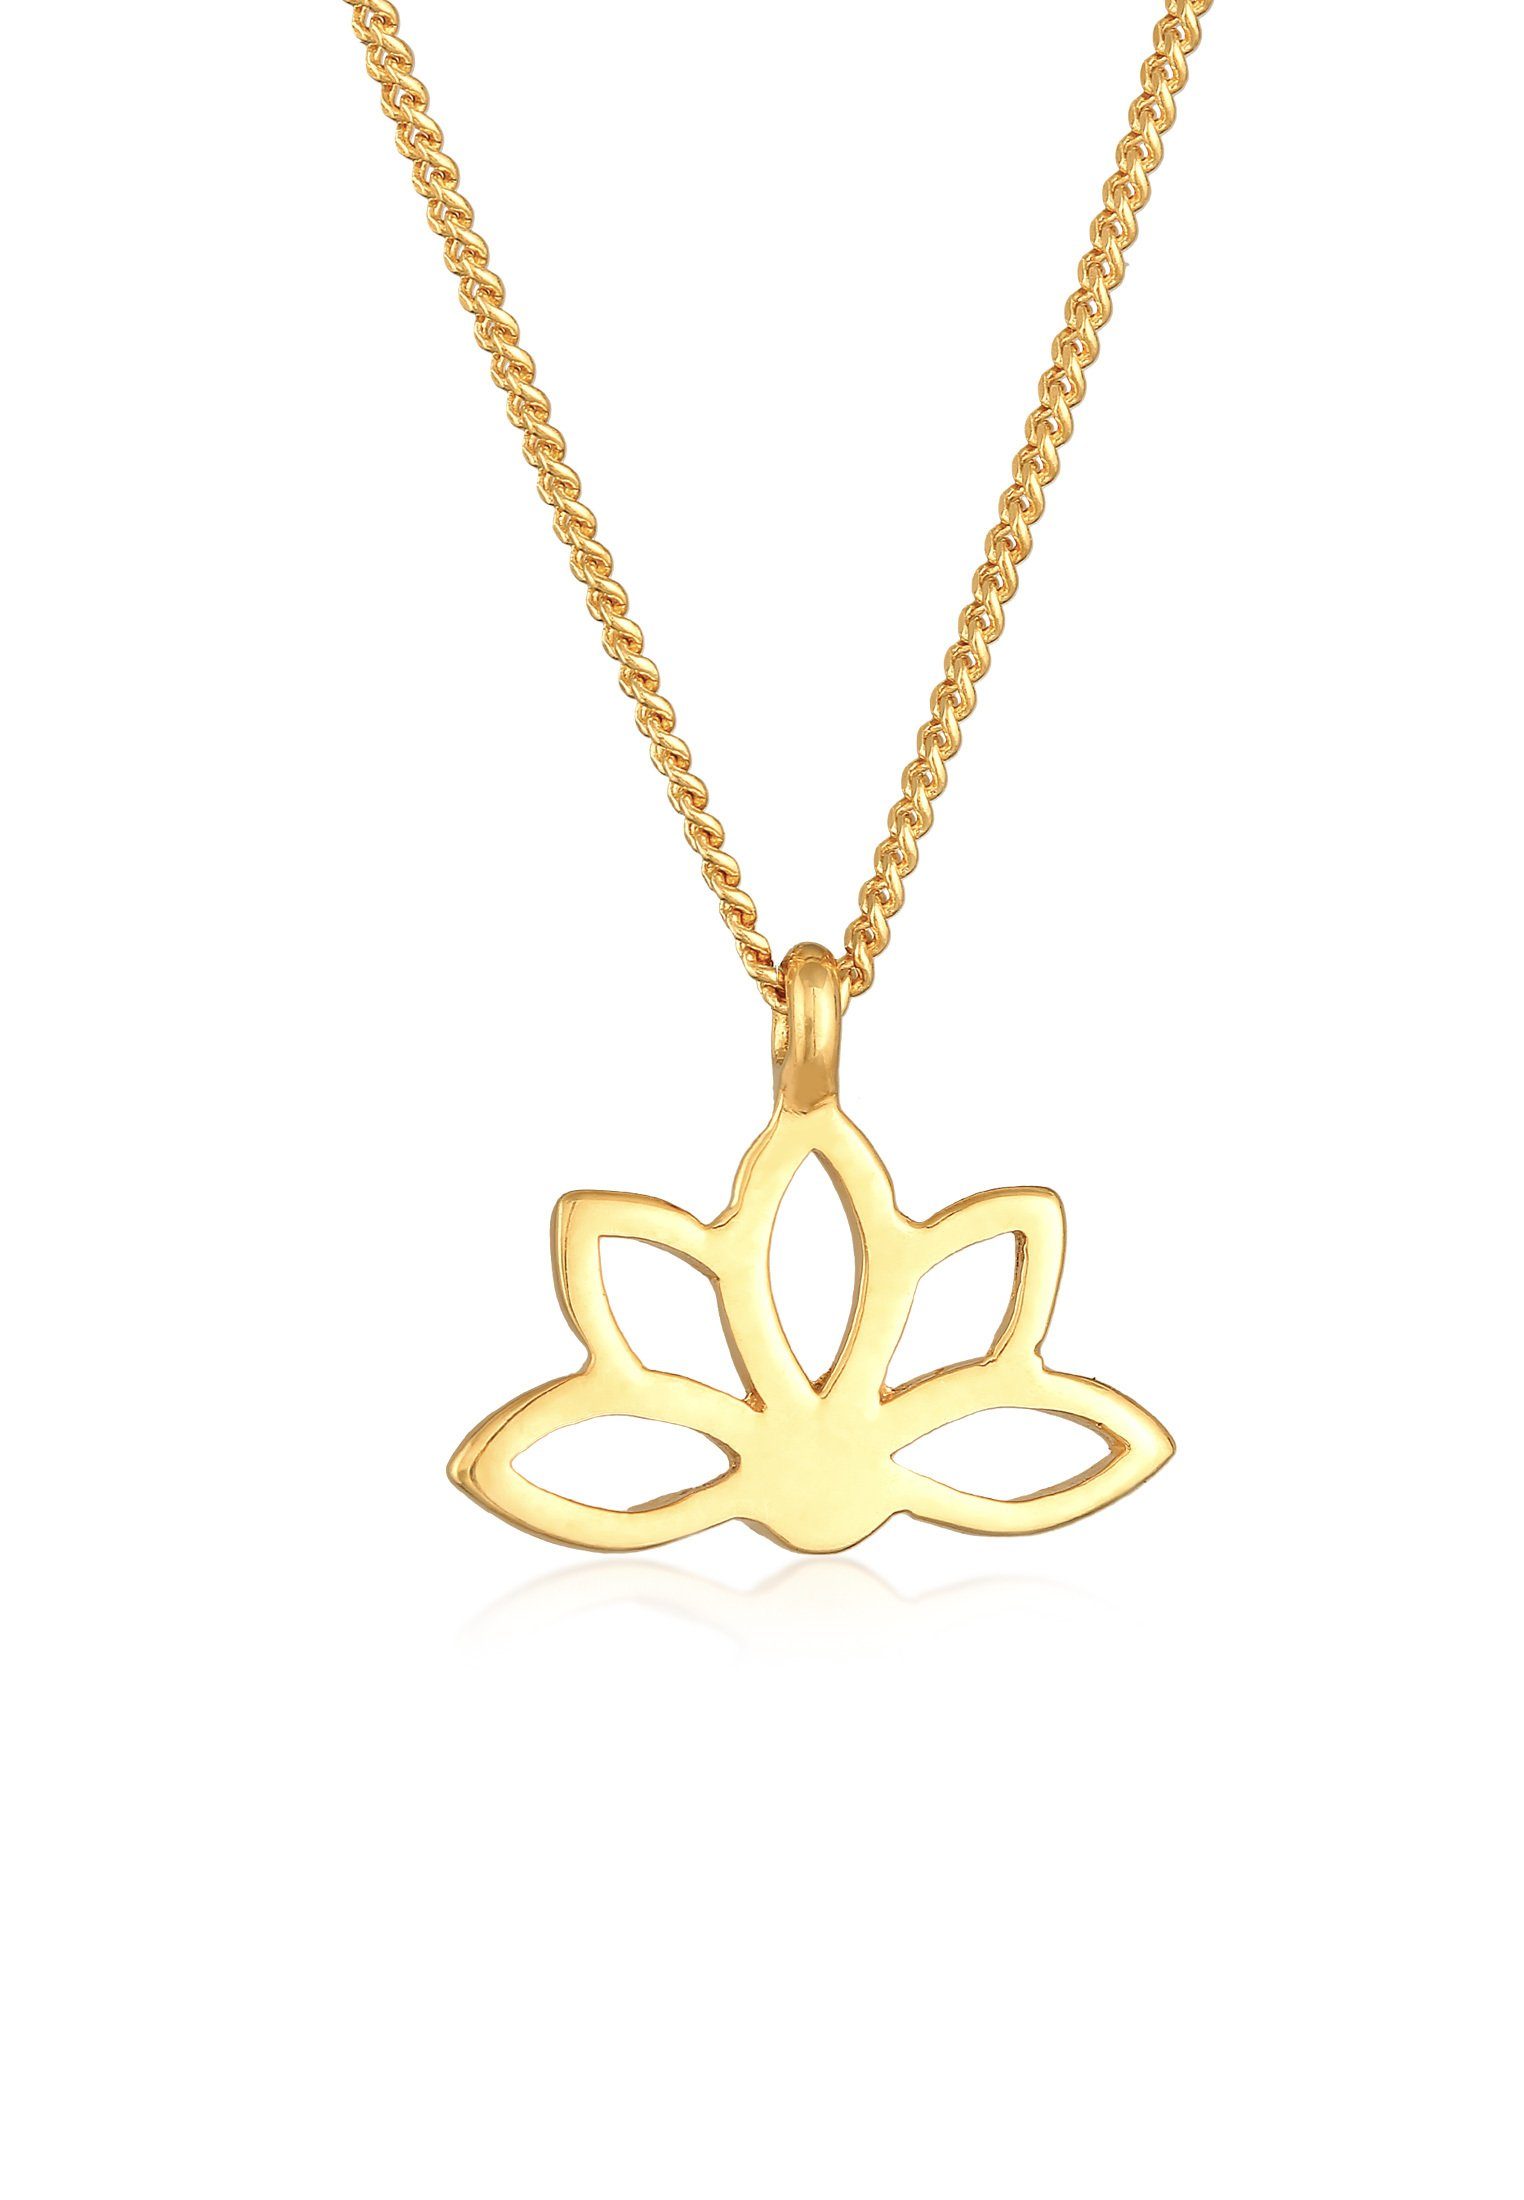 Gold mit Silber, Blume Spirituell 925 Anhänger Blume Elli Lotusblume Kette